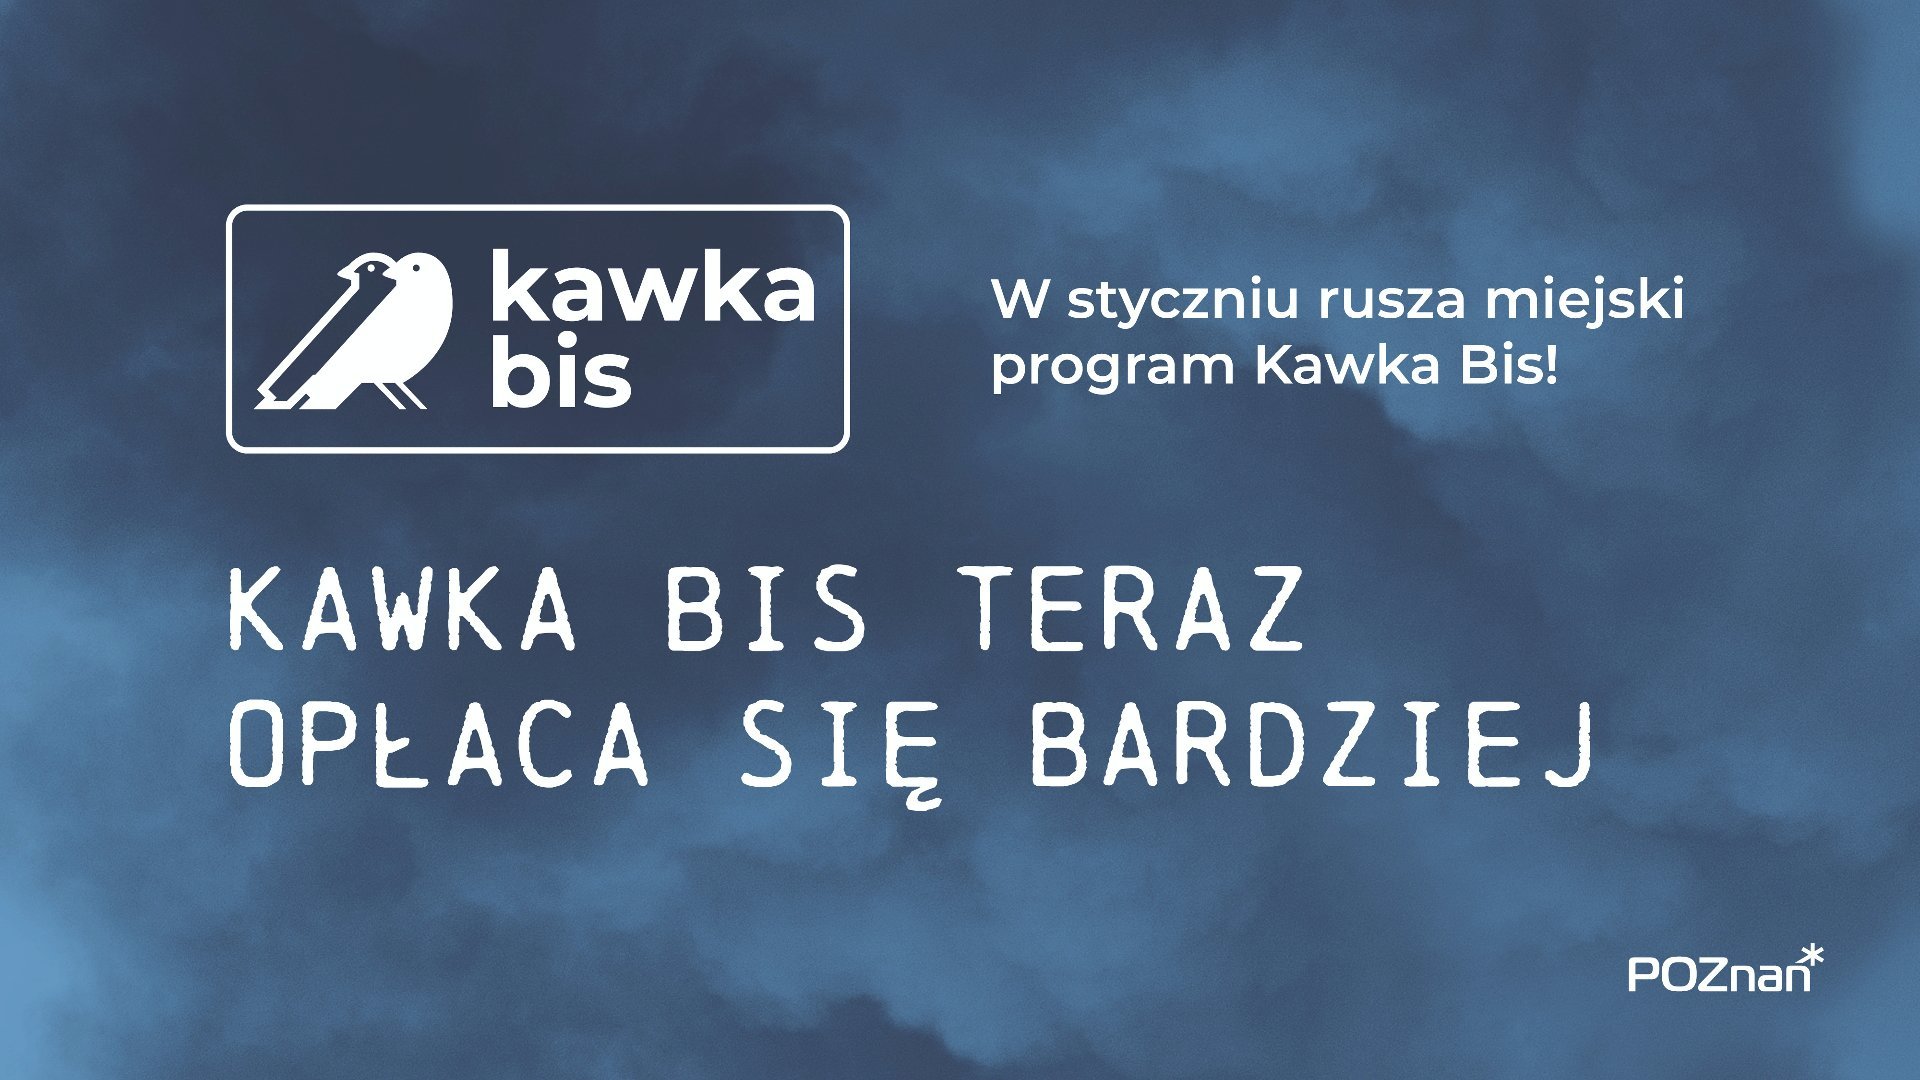 Grafika z granatowym tłem zadymionym, logiem programu z ptakami oraz hasłami akcji: "W styczniu rusza miejski program kawka bis" oraz "Kawka bis teraz opłaca się bardziej"